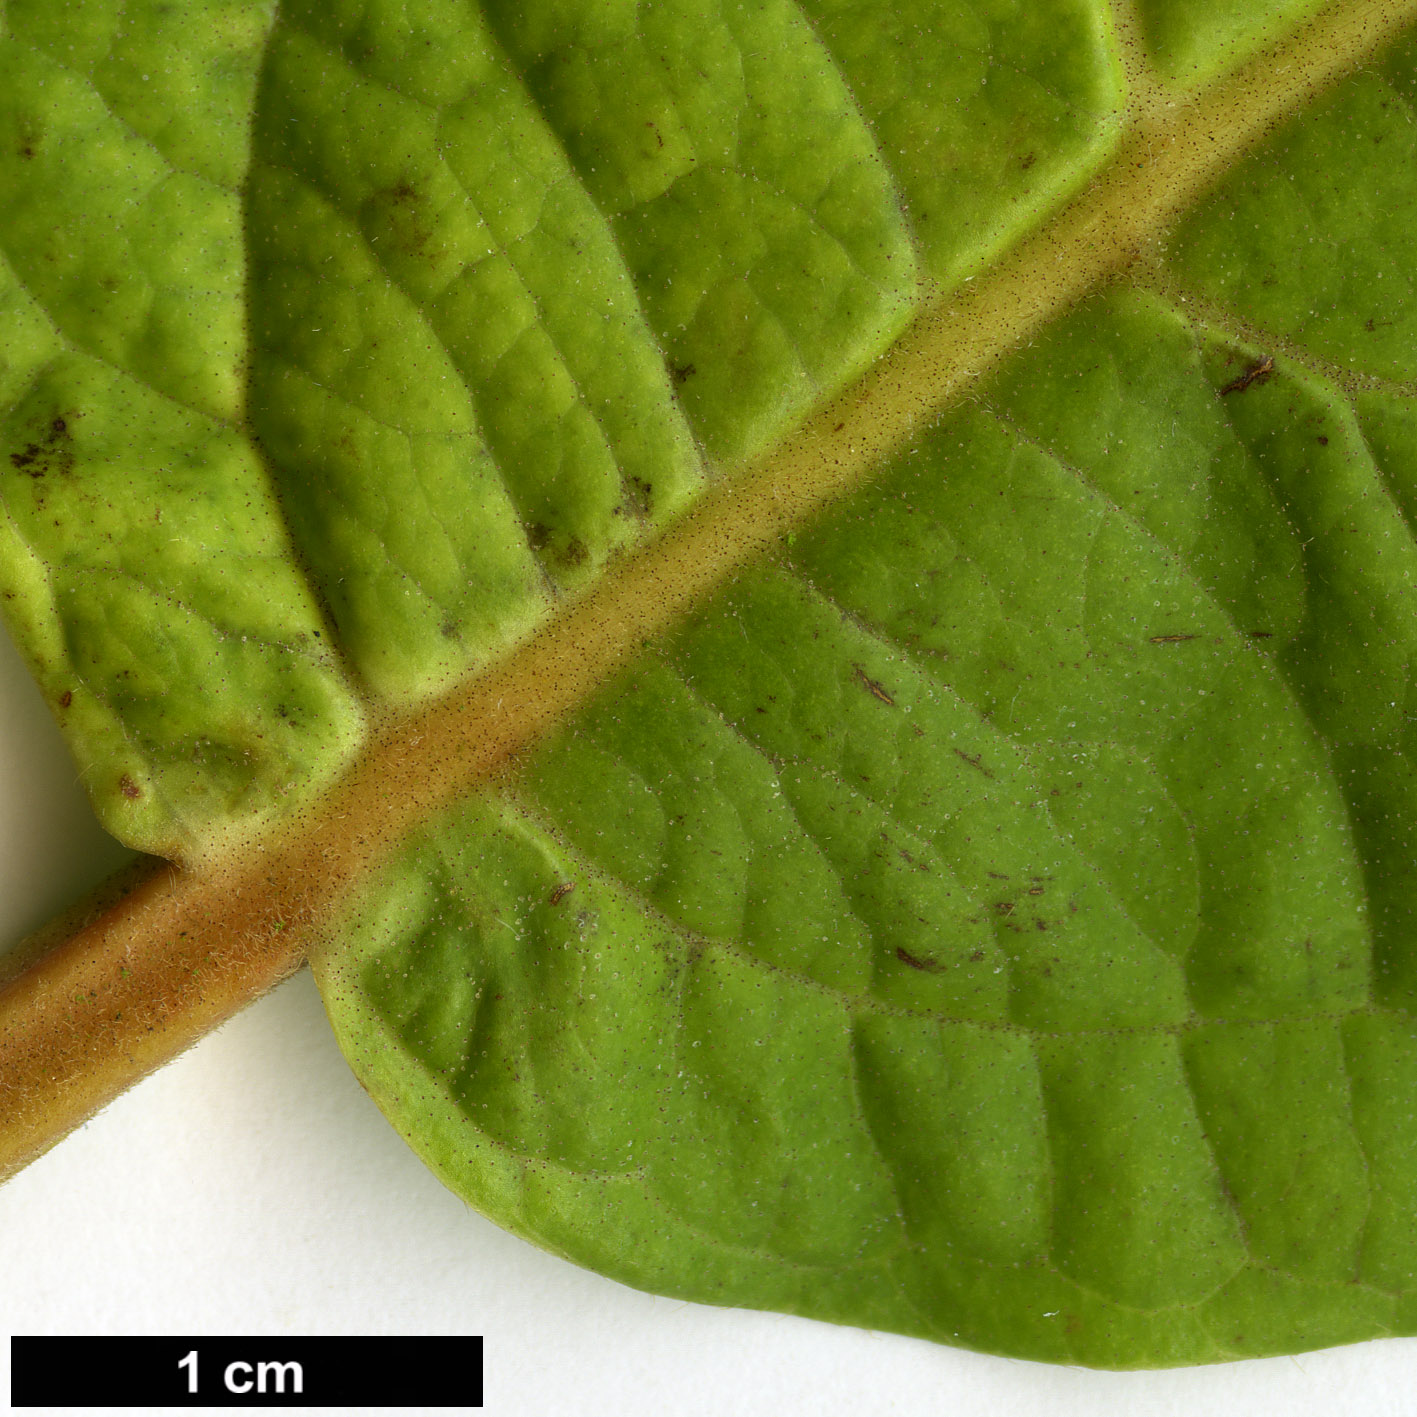 High resolution image: Family: Adoxaceae - Genus: Viburnum - Taxon: sambucinum